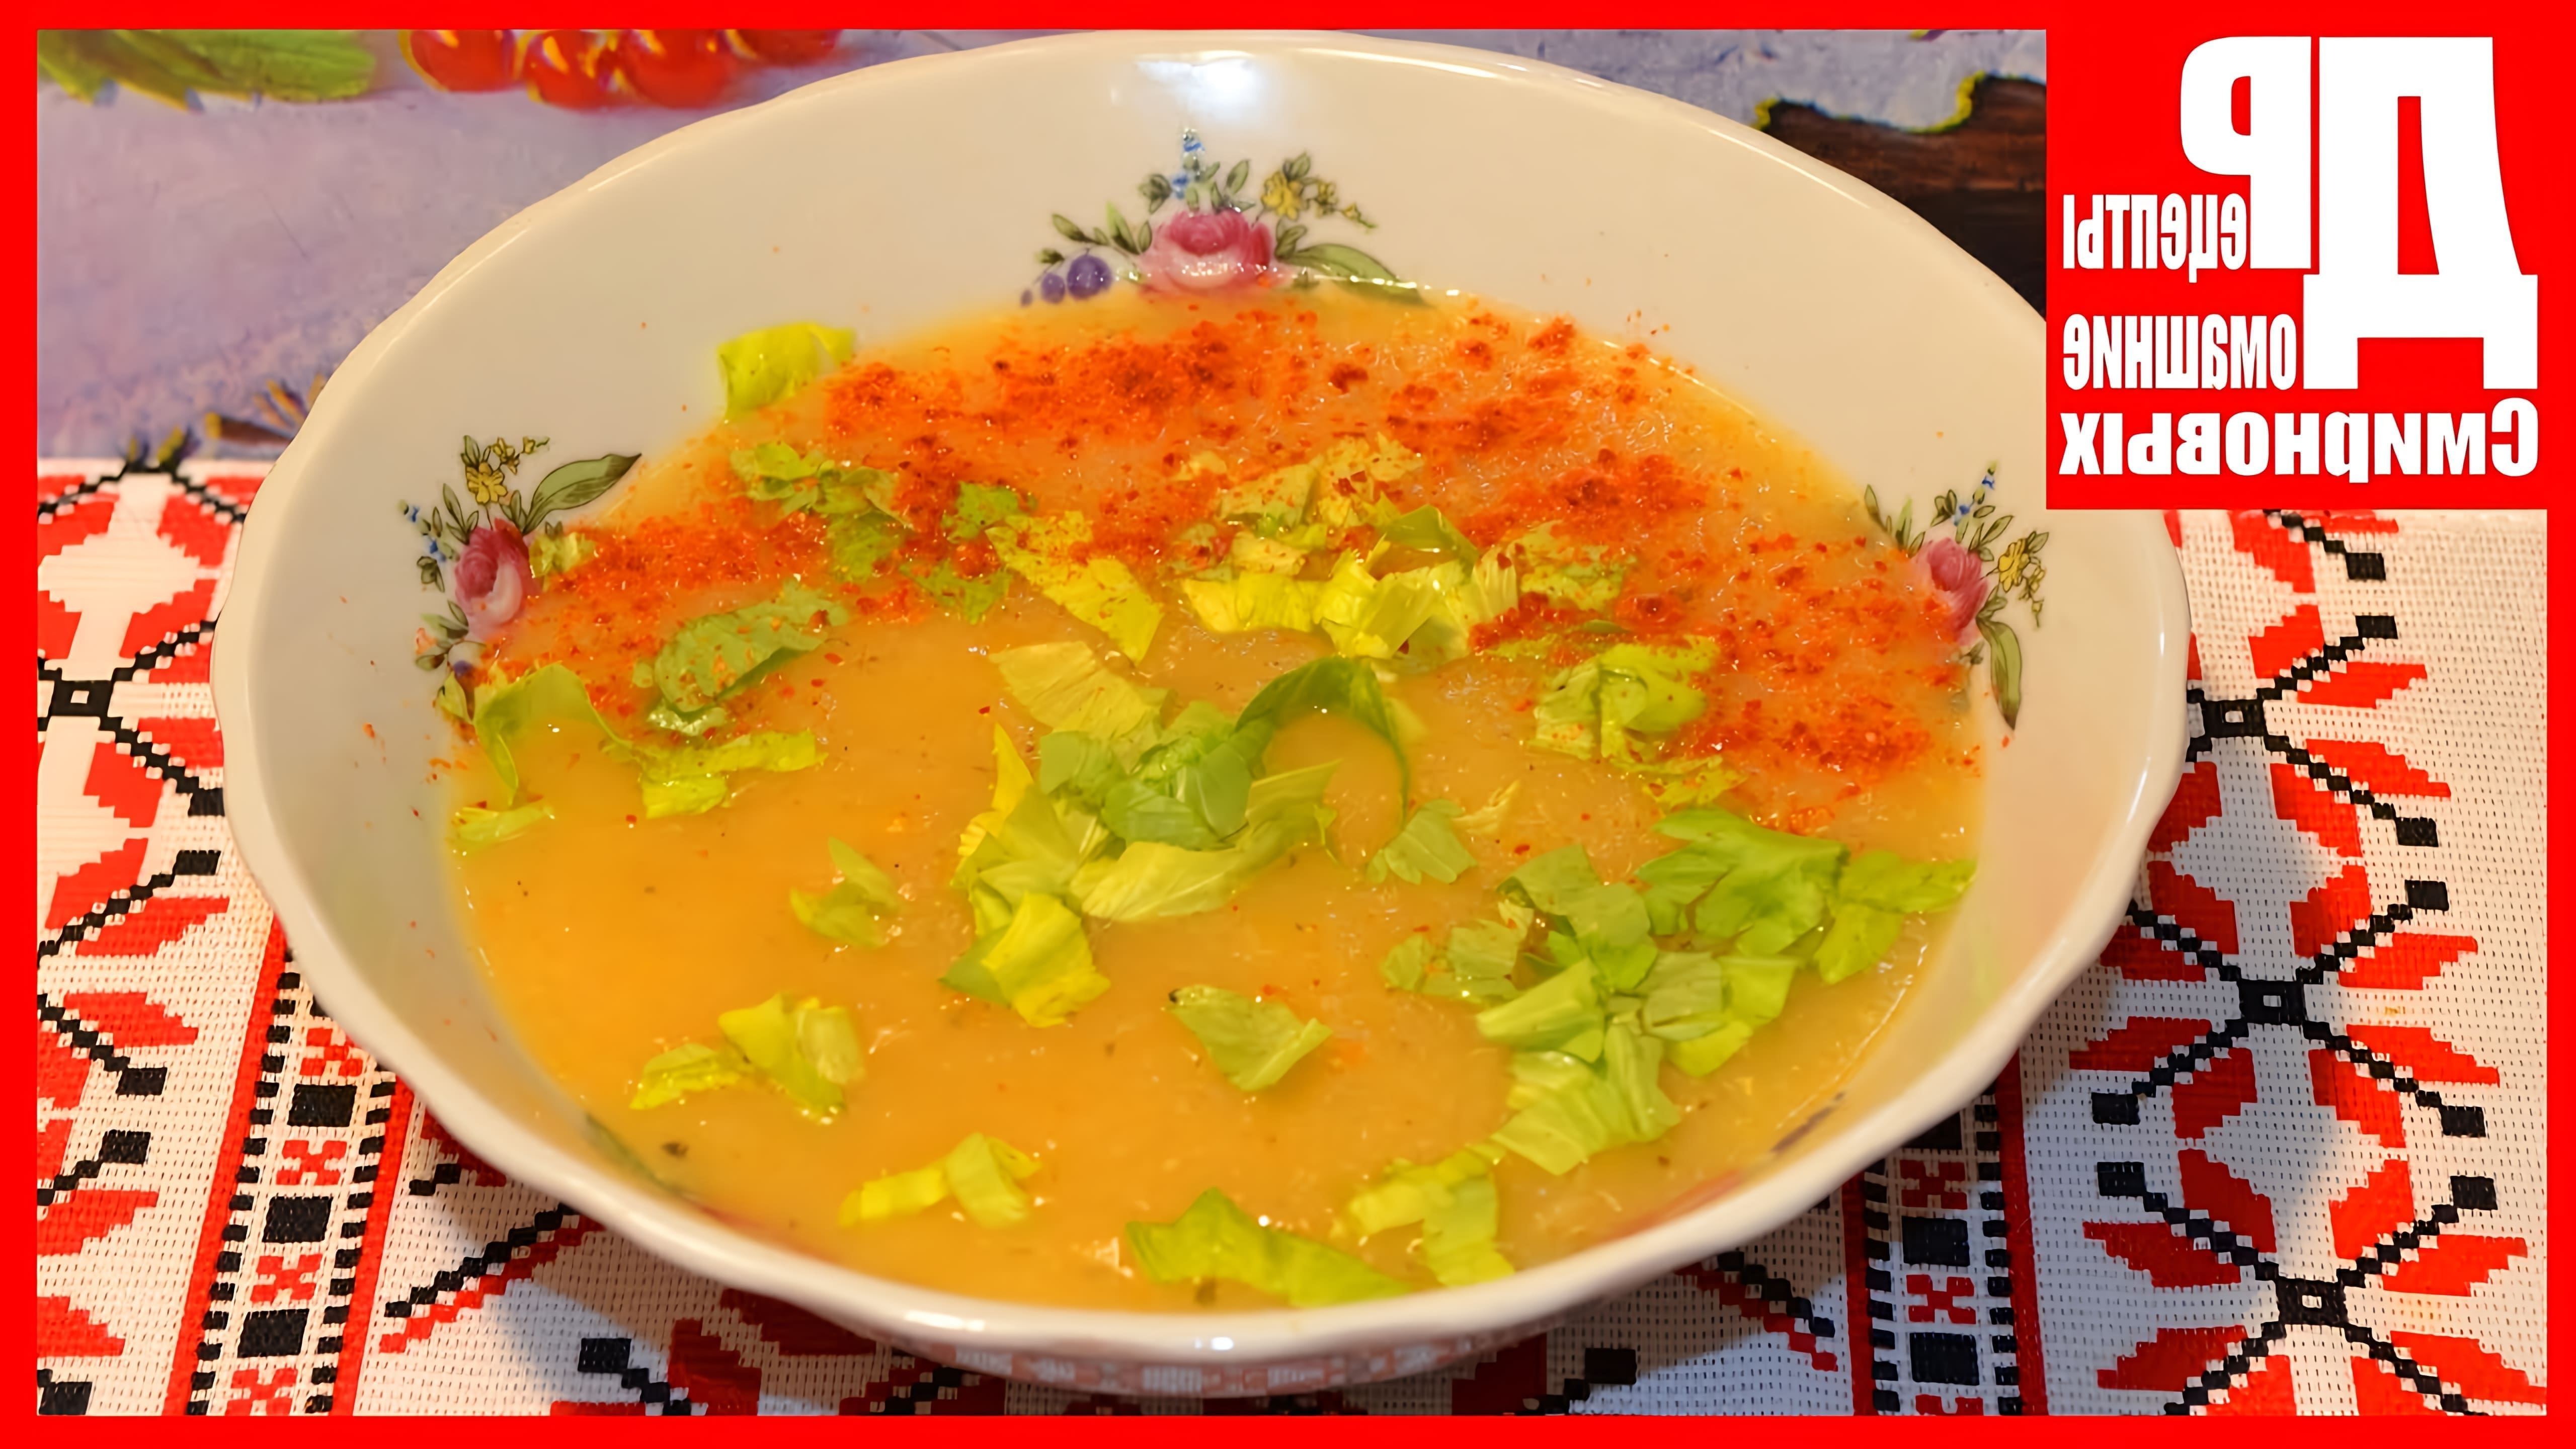 В этом видео демонстрируется процесс приготовления овощного супа-пюре с корнем сельдерея